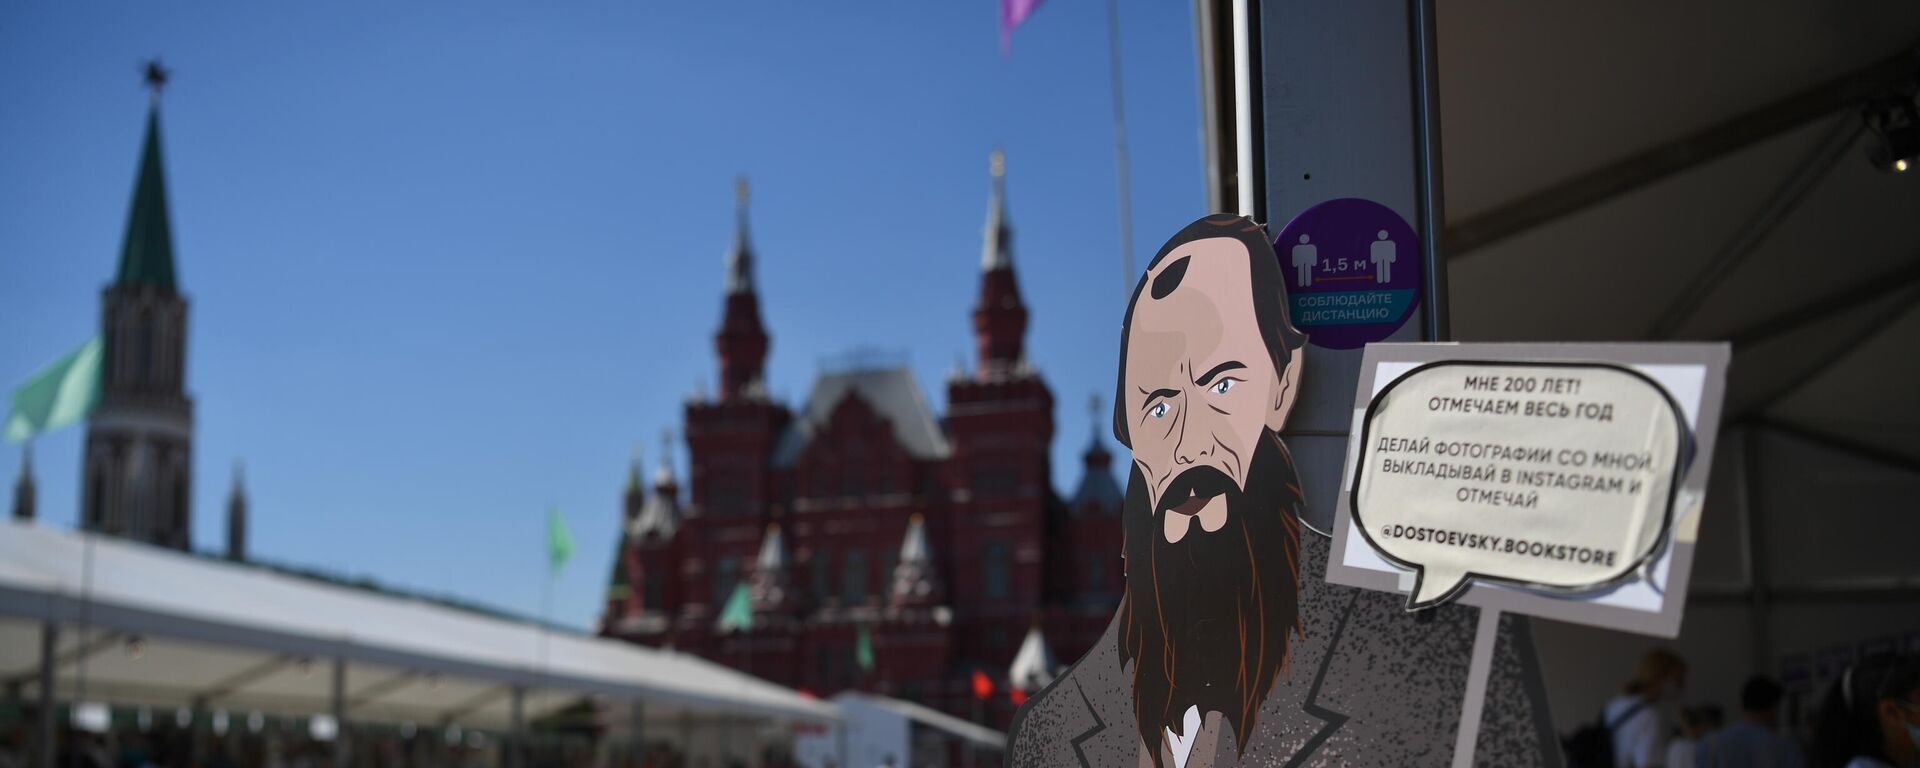 Посетители на книжном фестивале Красная площадь в Москве - Sputnik Азербайджан, 1920, 02.11.2021